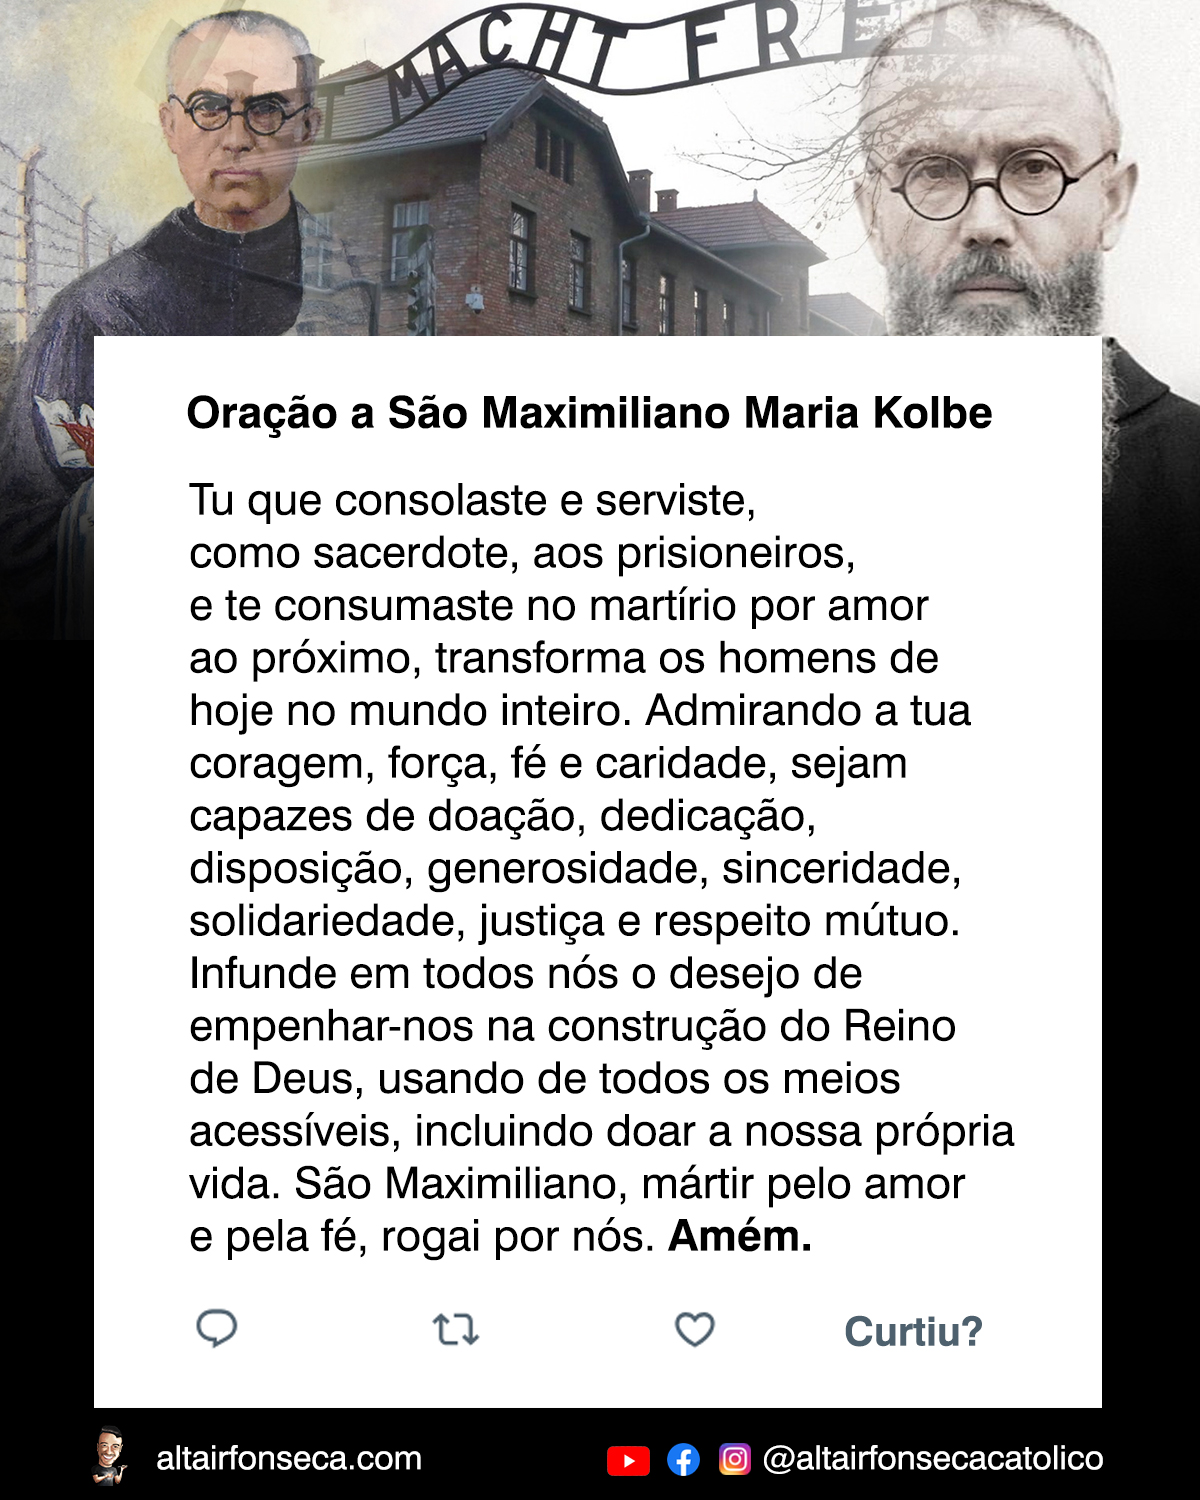 Uma linda oração a São Maximiliano Maria Kolbe